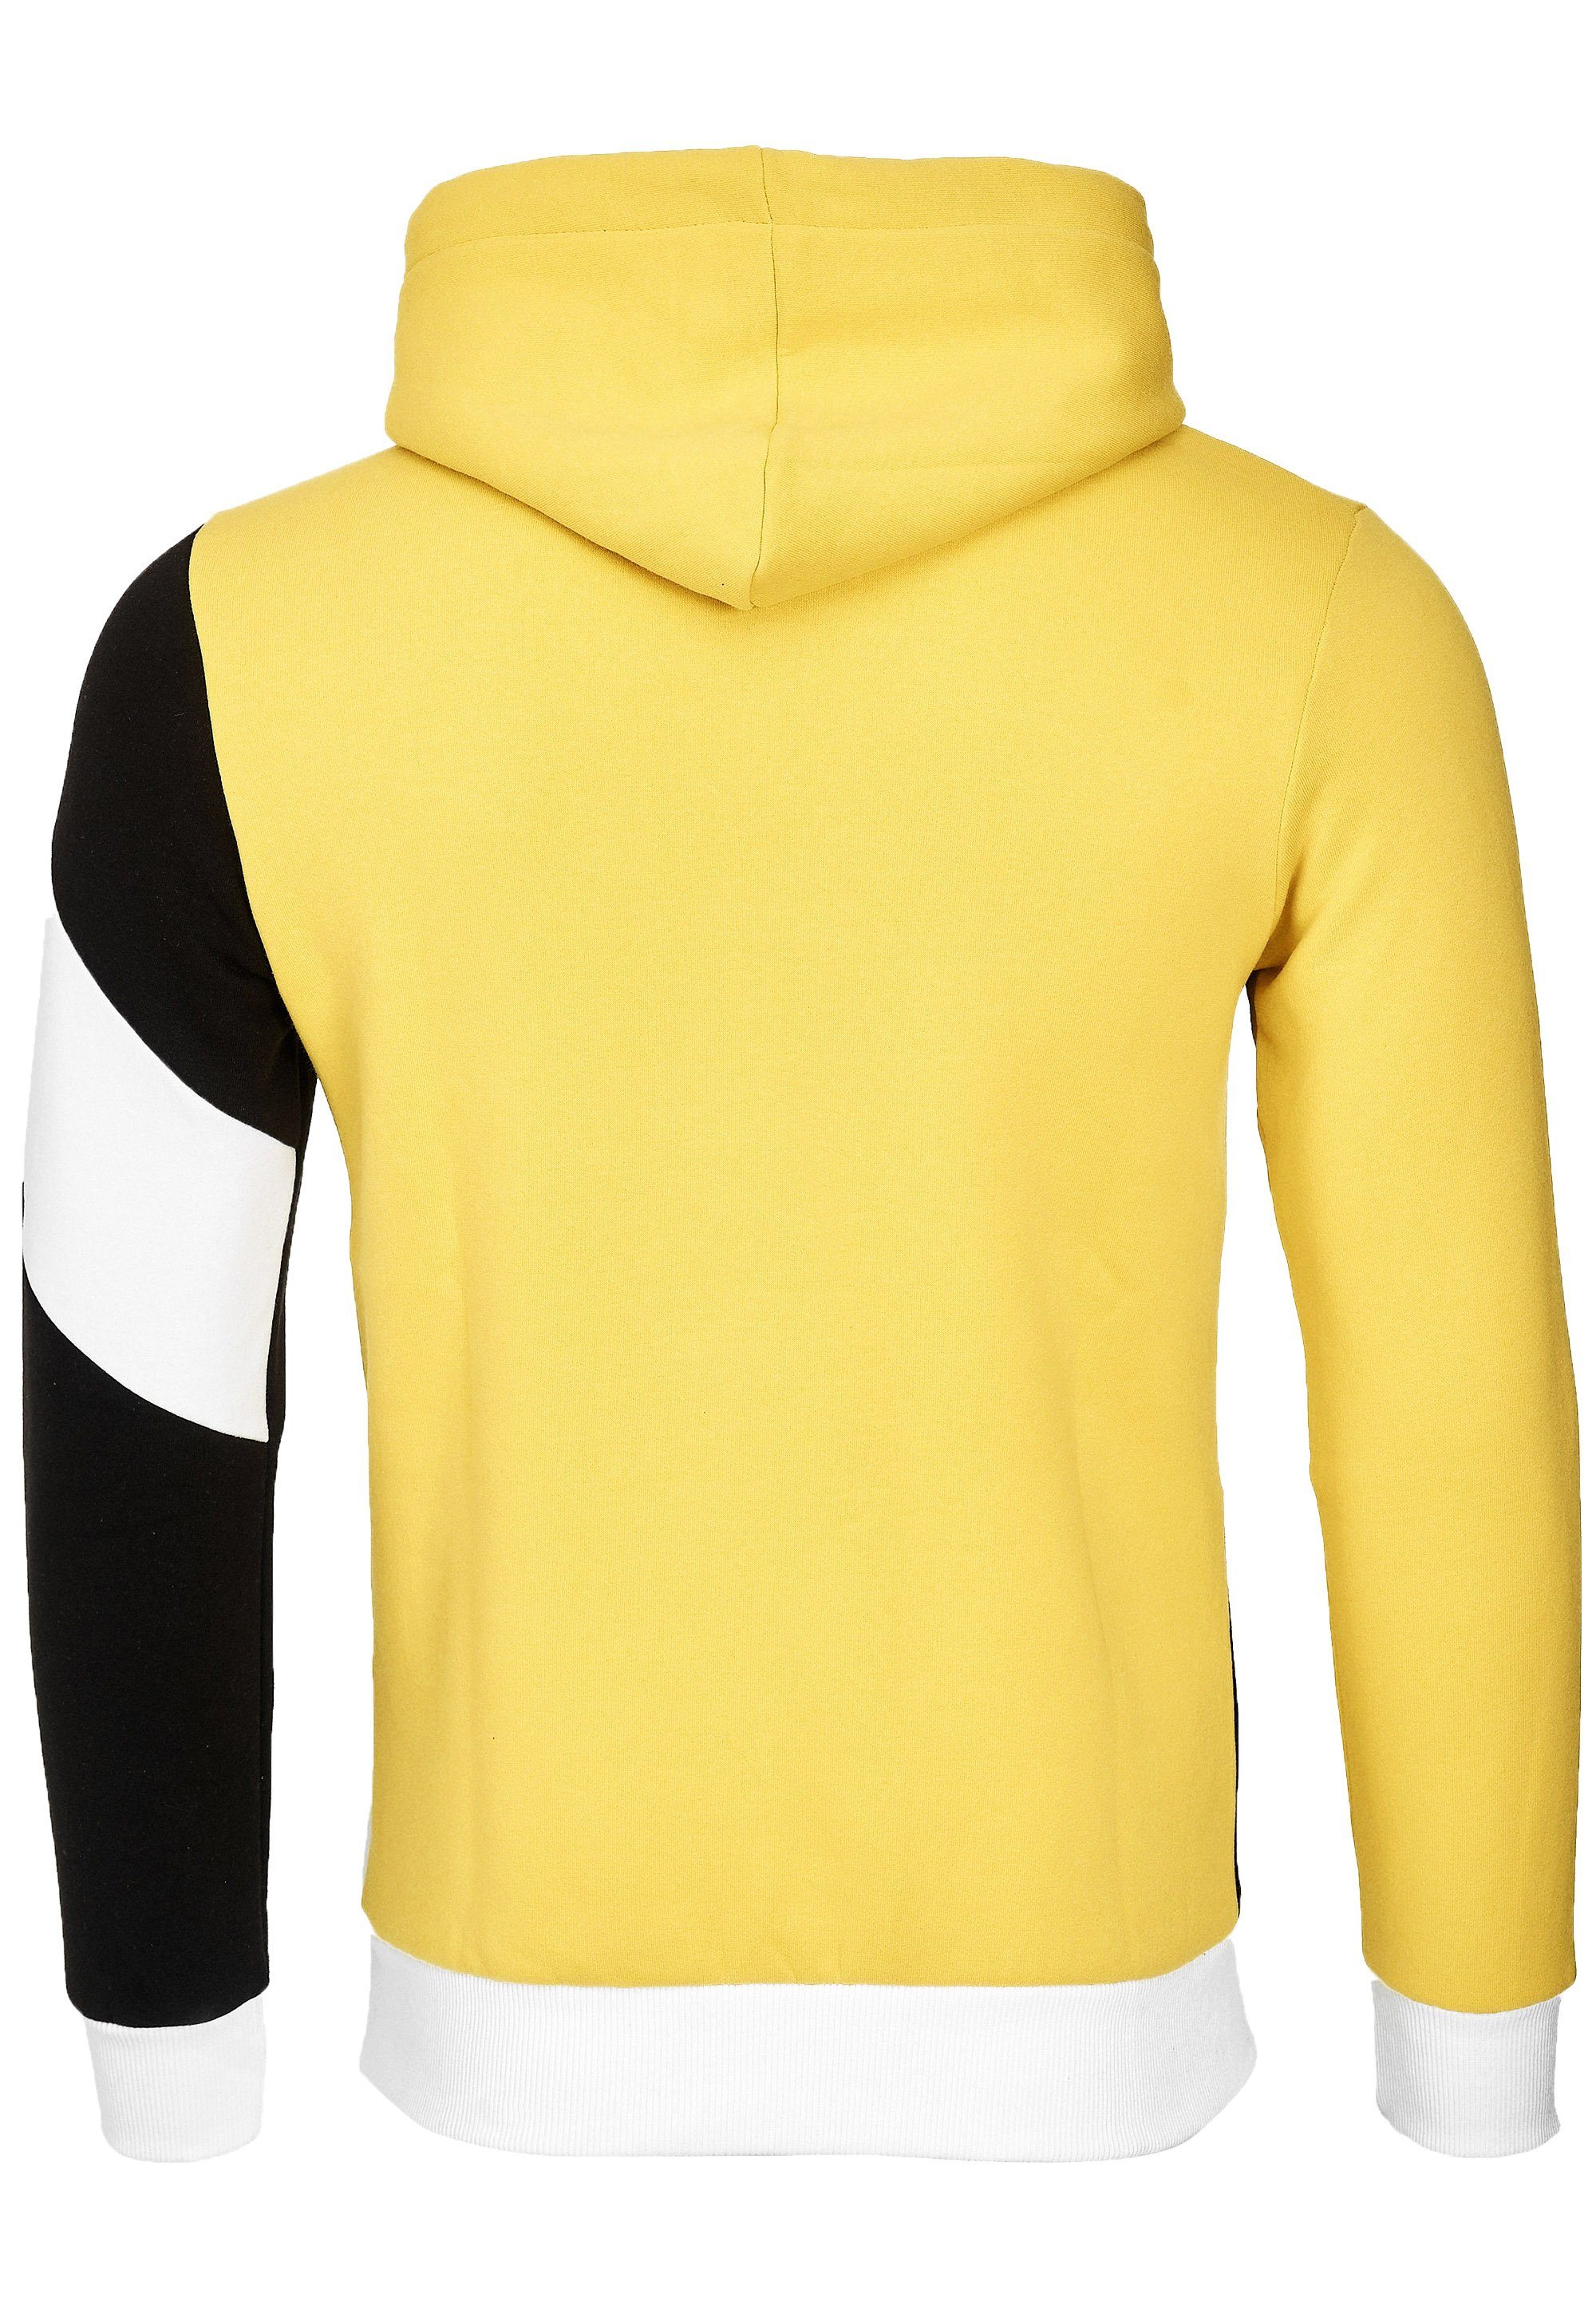 Rusty Neal Kapuzensweatshirt in Design gelb-schwarz sportlichem